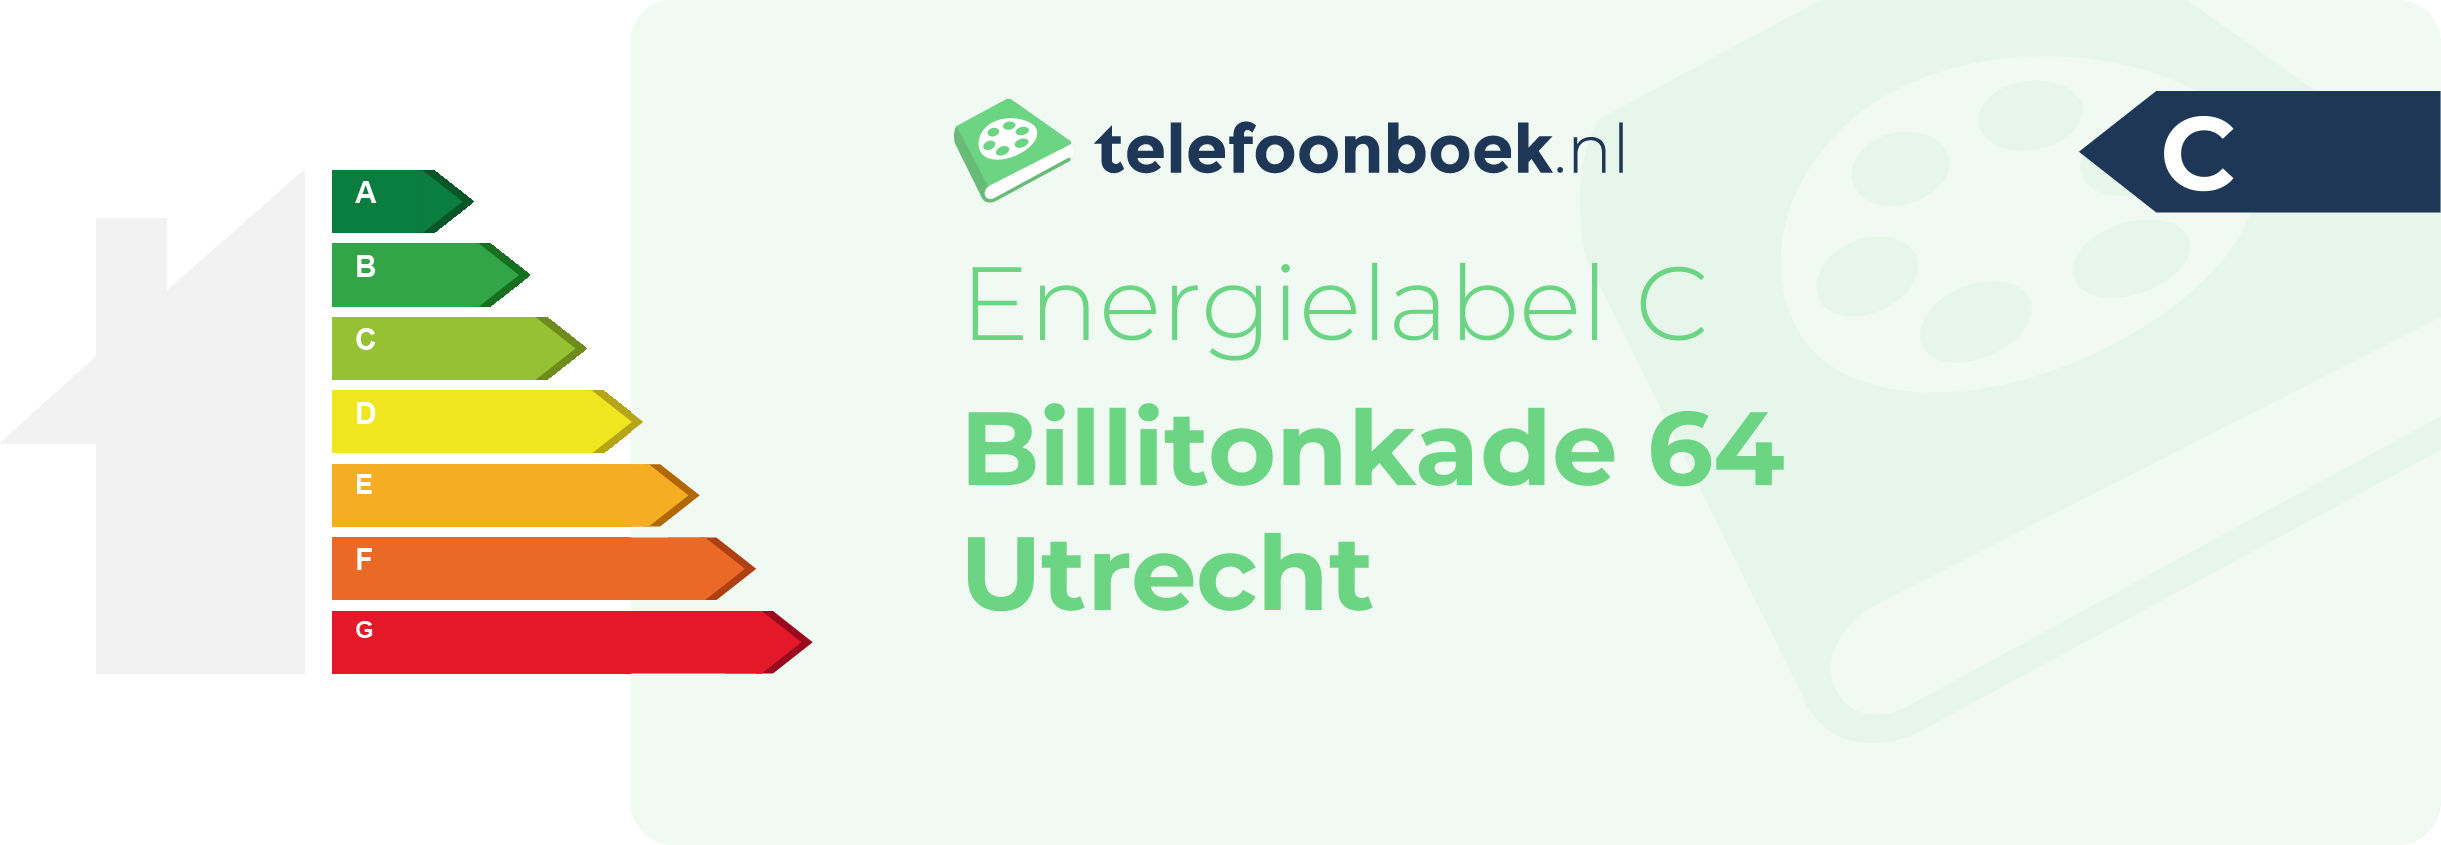 Energielabel Billitonkade 64 Utrecht